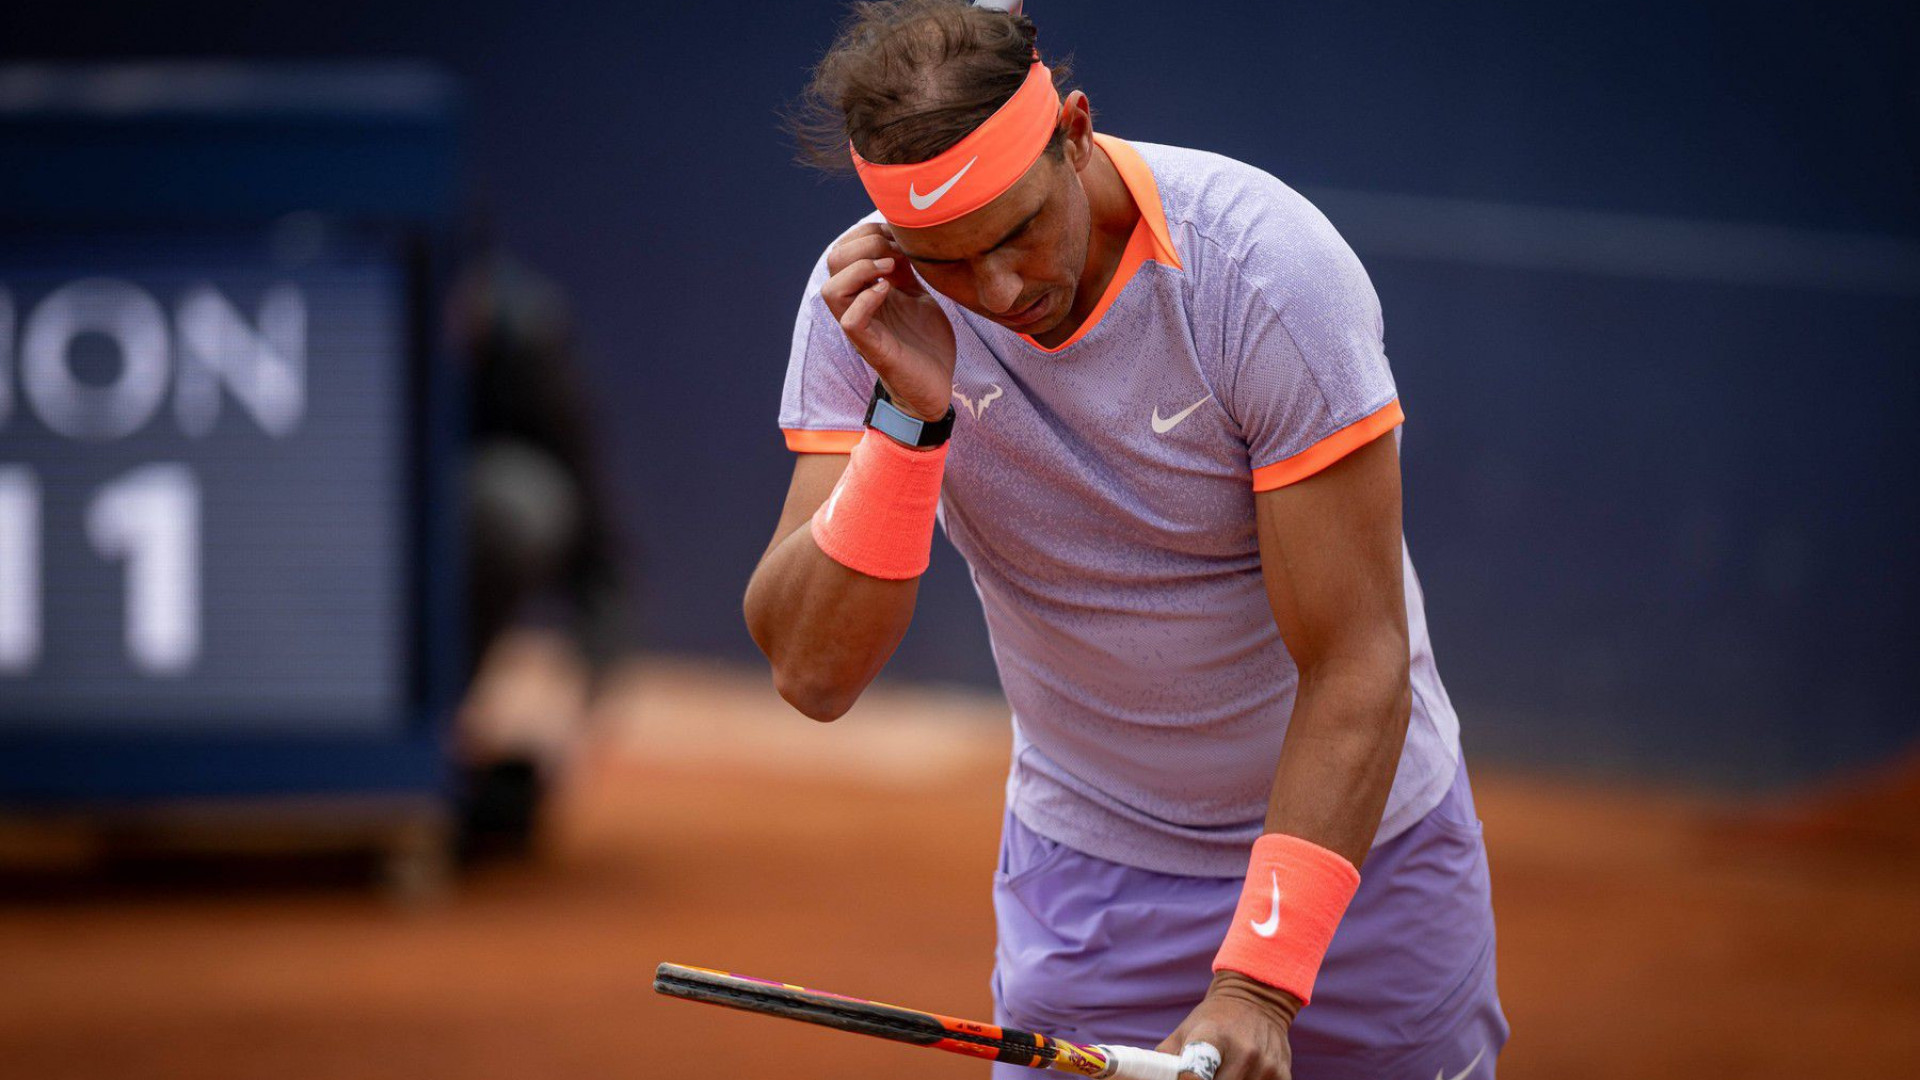   Kraj za Nadala! Španac dobio bolnu lekciju: Nije to onaj stari Rafa - Sportal